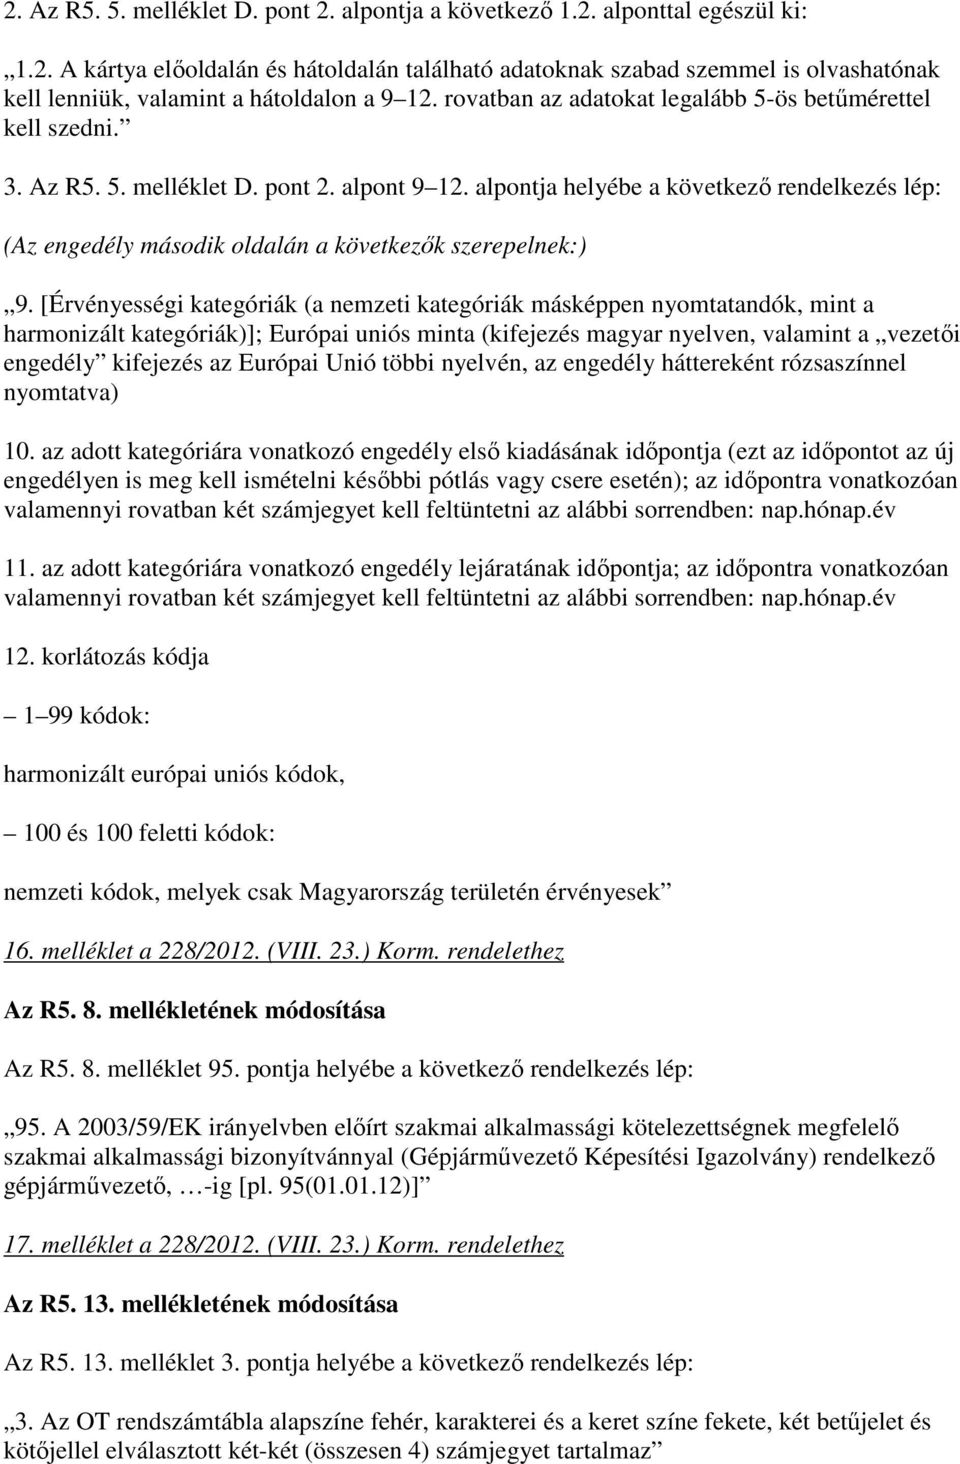 alpontja helyébe a következı rendelkezés lép: (Az engedély második oldalán a következık szerepelnek:) 9.